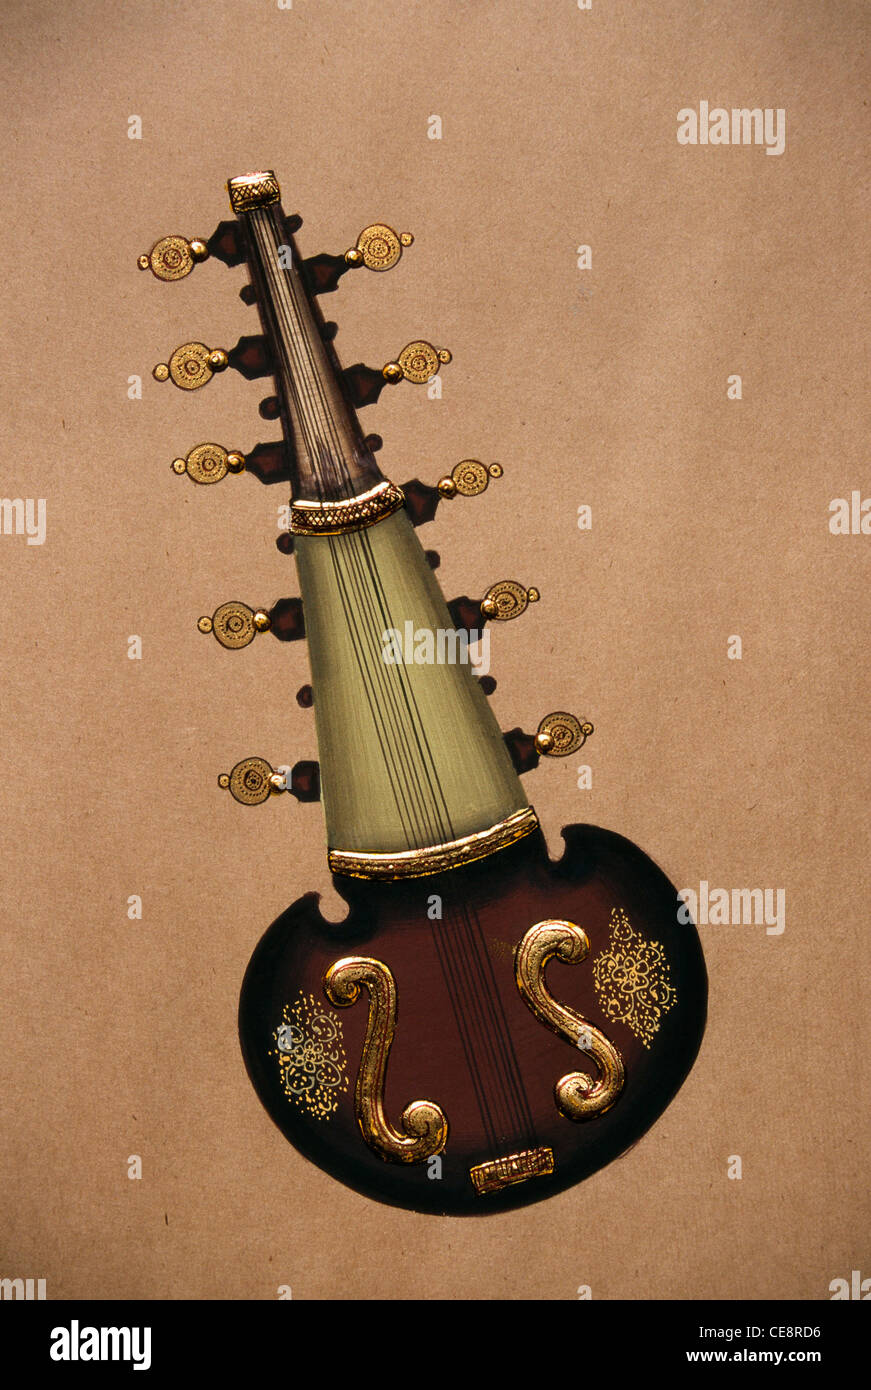 BDR 80606 : Peinture sur papier de musique classique indienne String  Instrument sarangi Photo Stock - Alamy